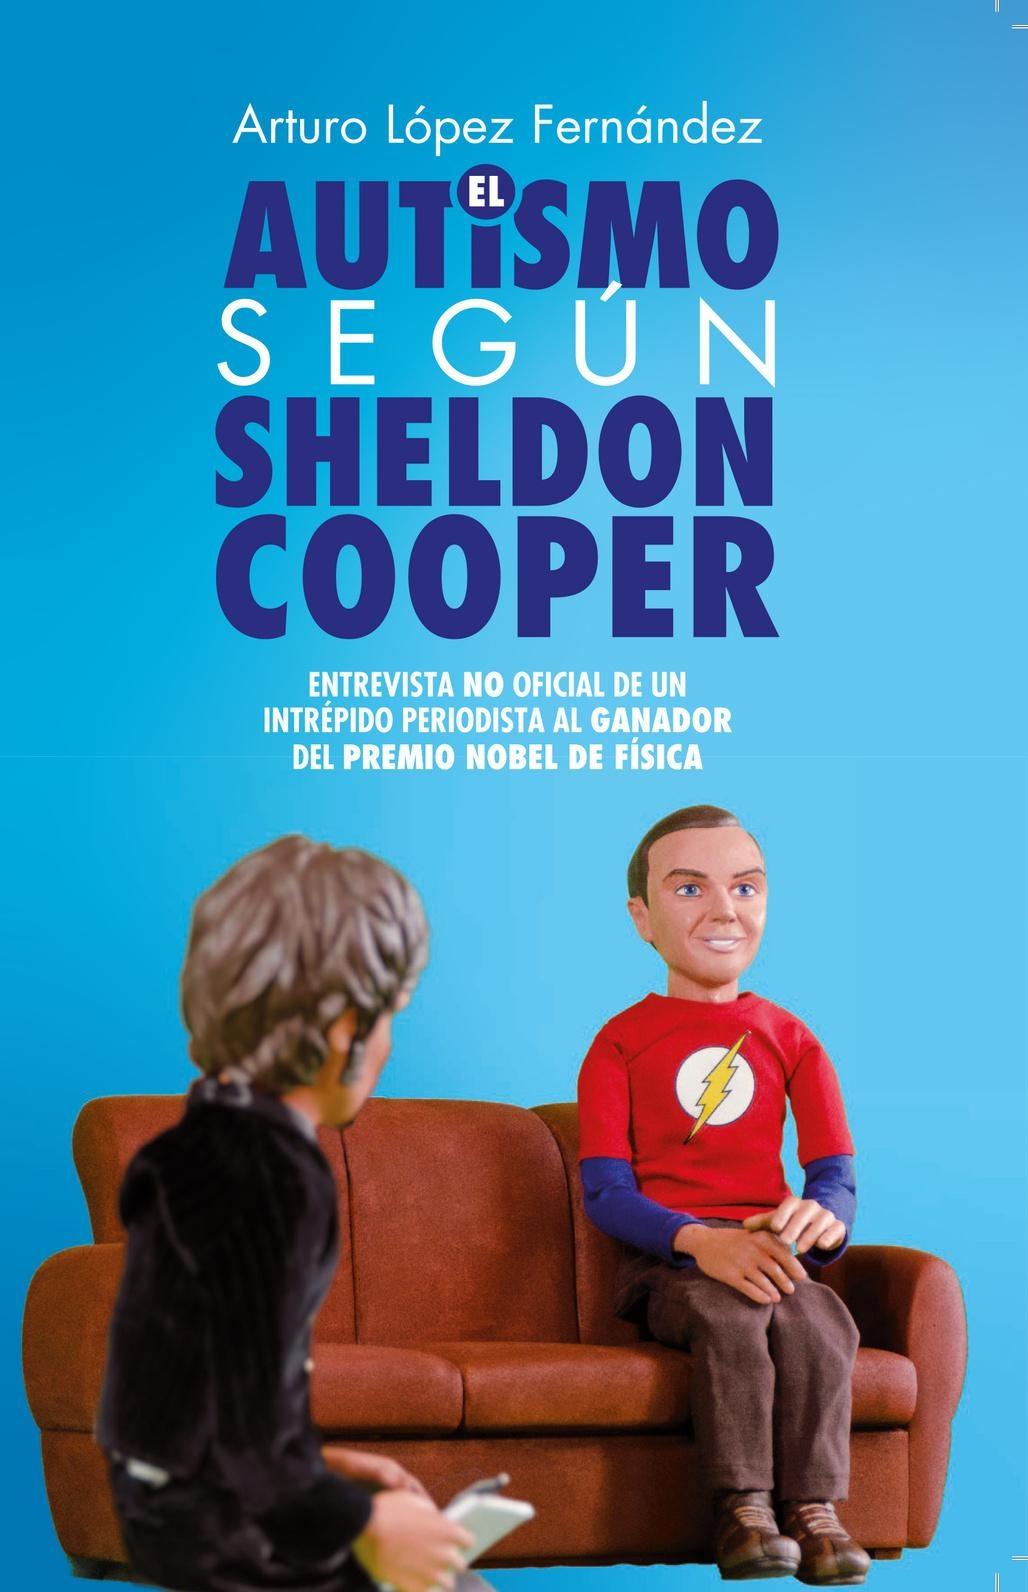 Autismo según Sheldon Cooper, El "Entrevista no Oficial de un Intrépido Periodista al Ganador del Premio N"